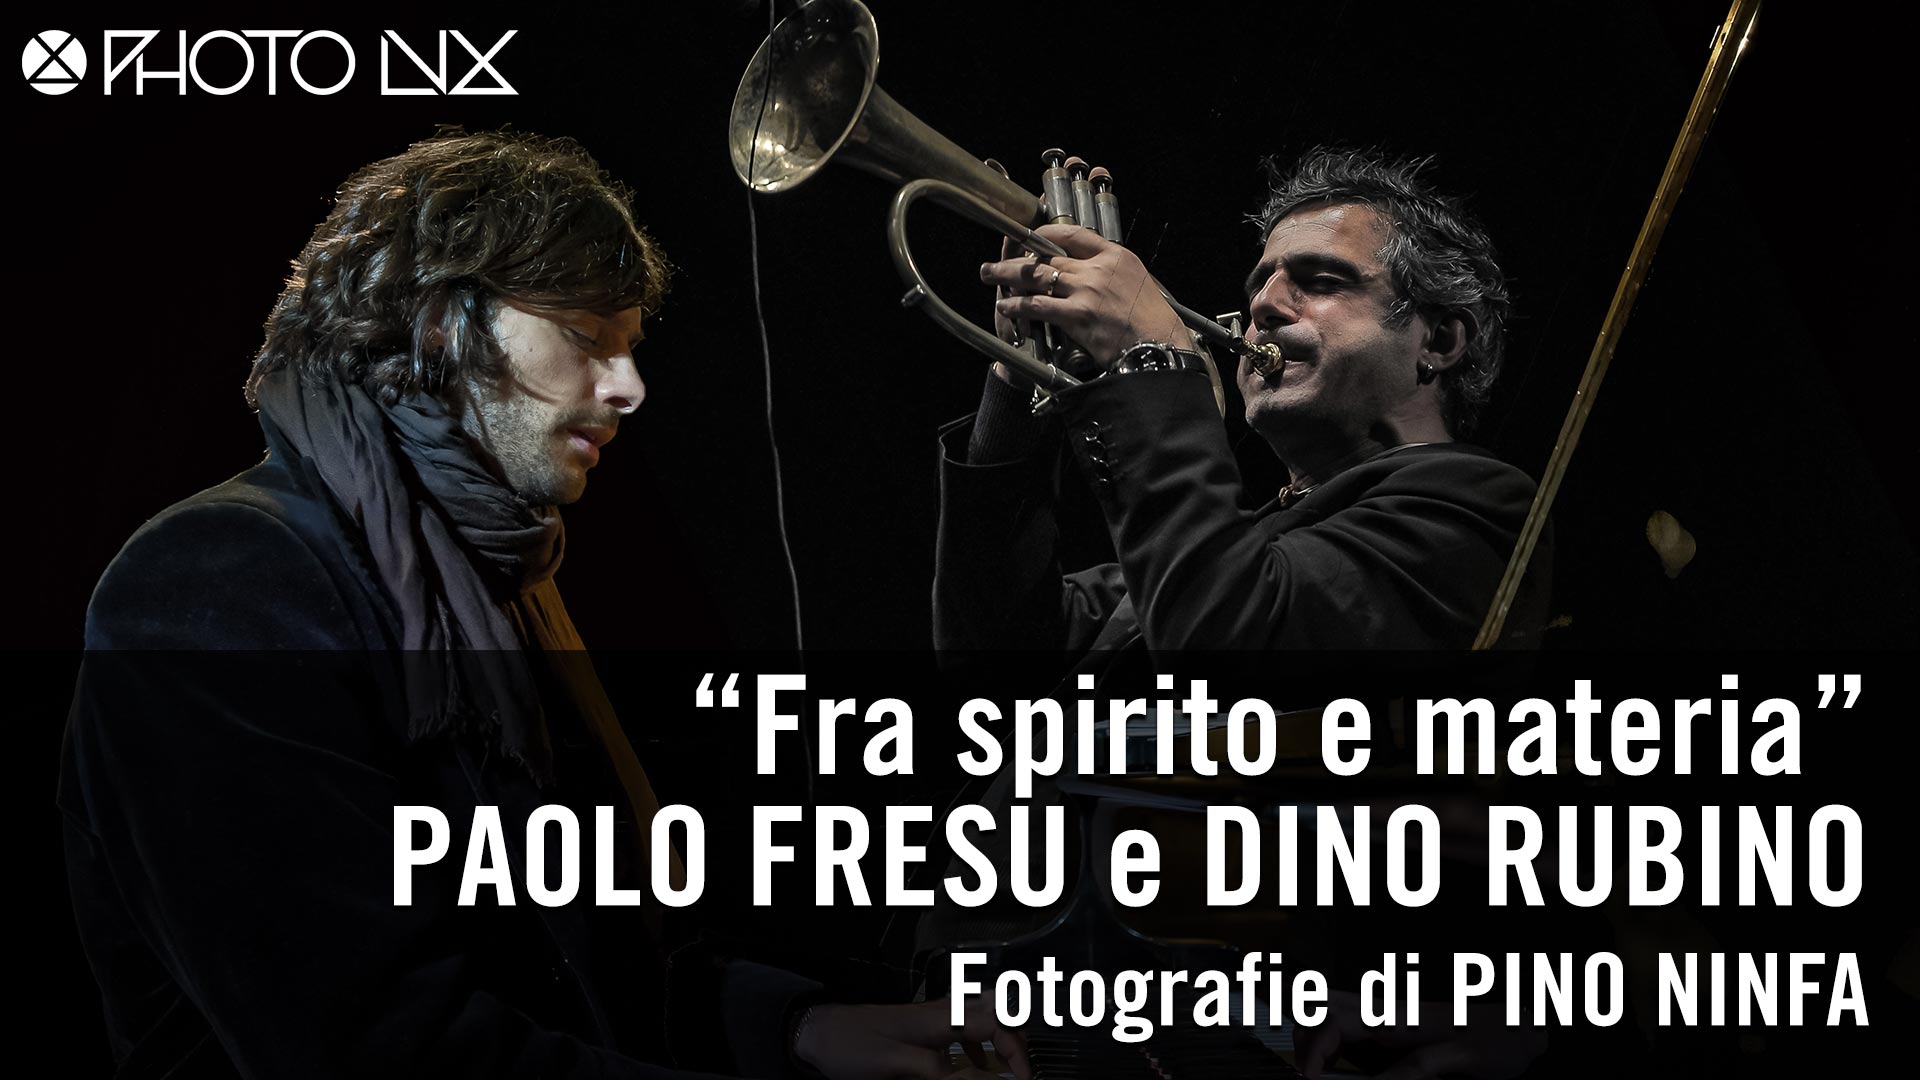 Paolo Fresu & Dino Rubino - Fra spirito e materia